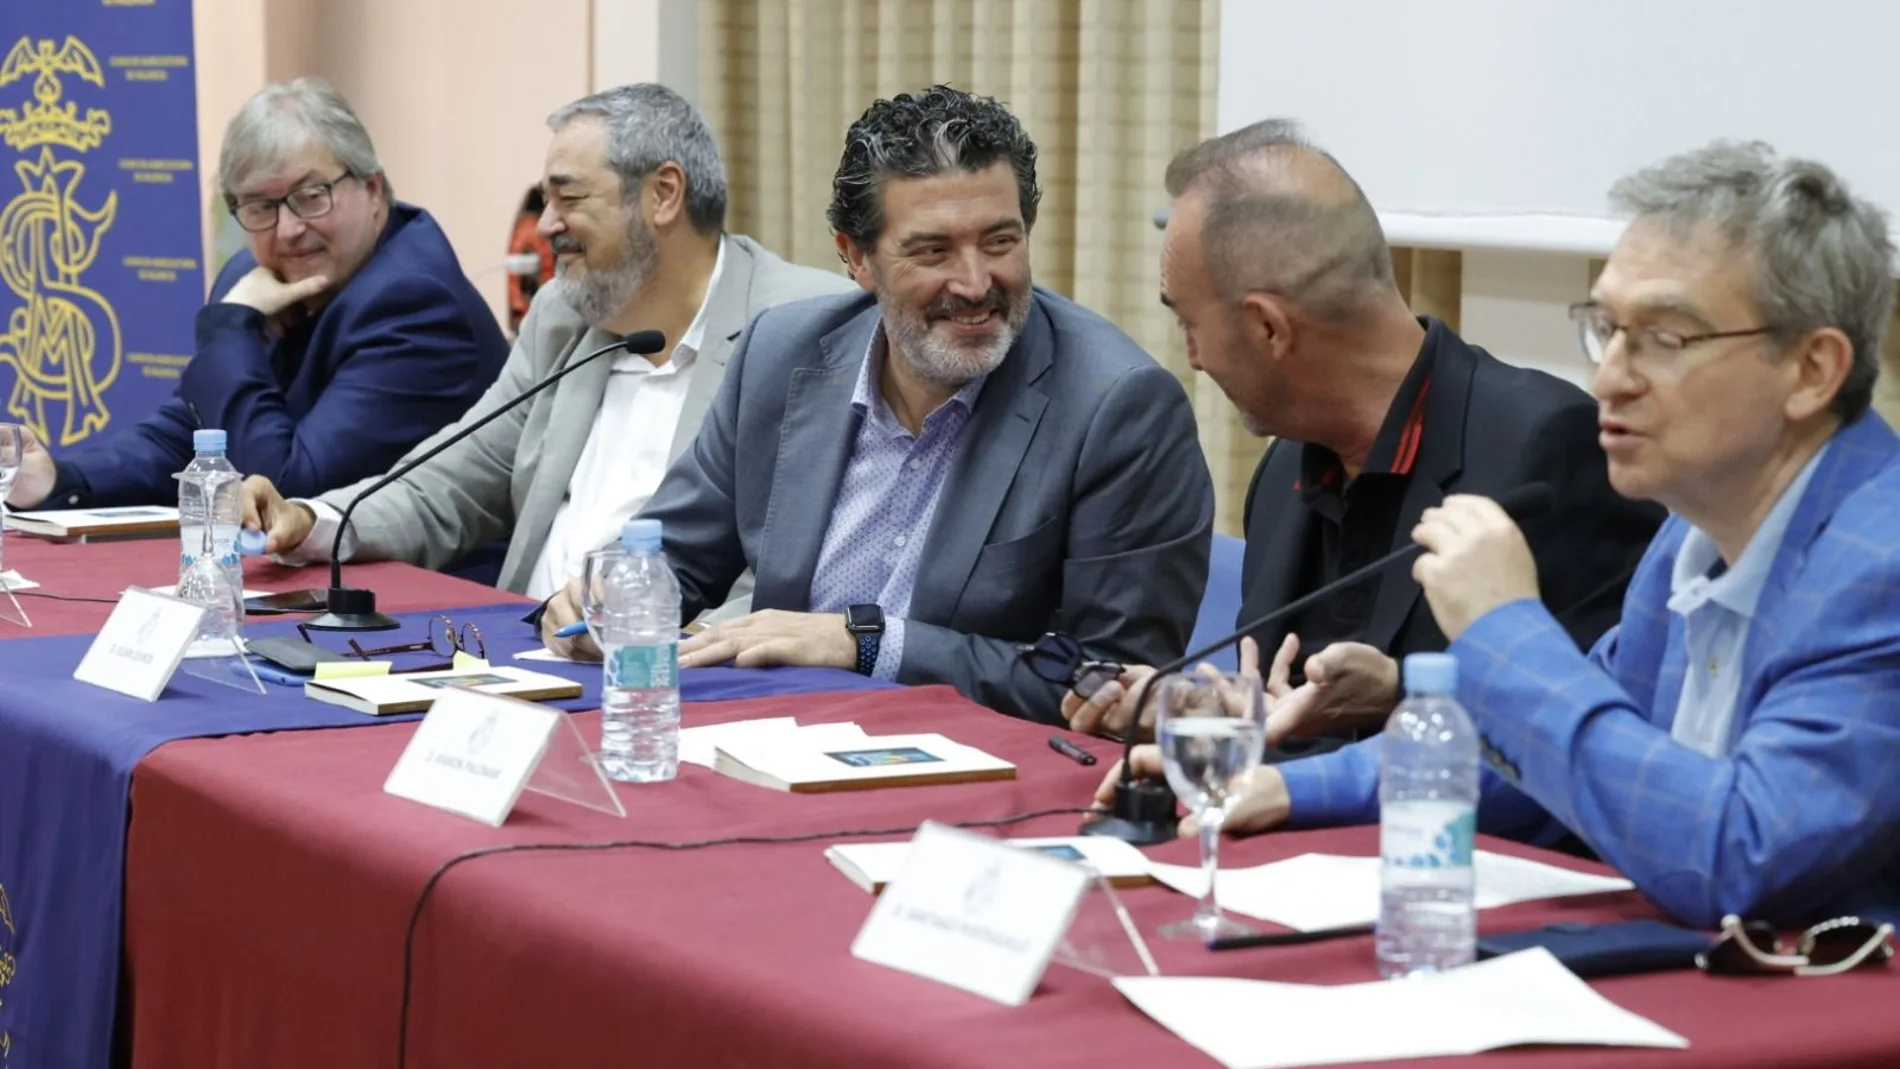 El periodista Julián Quirós, en el centro, durante la presentación del libro "Pérdidas y ganancias" en Valencia